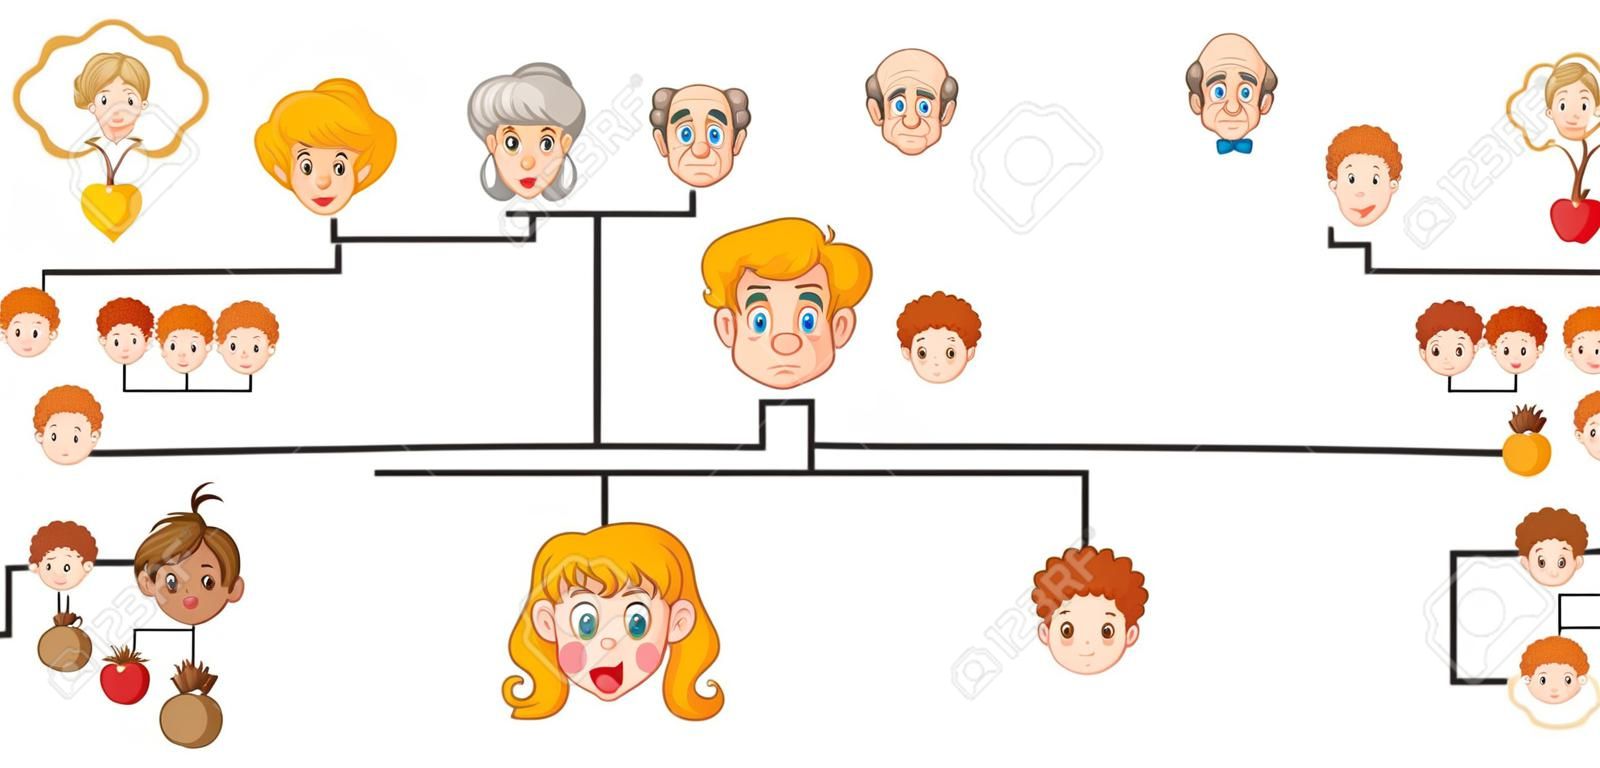 Plakat przedstawiający drzewo genealogiczne